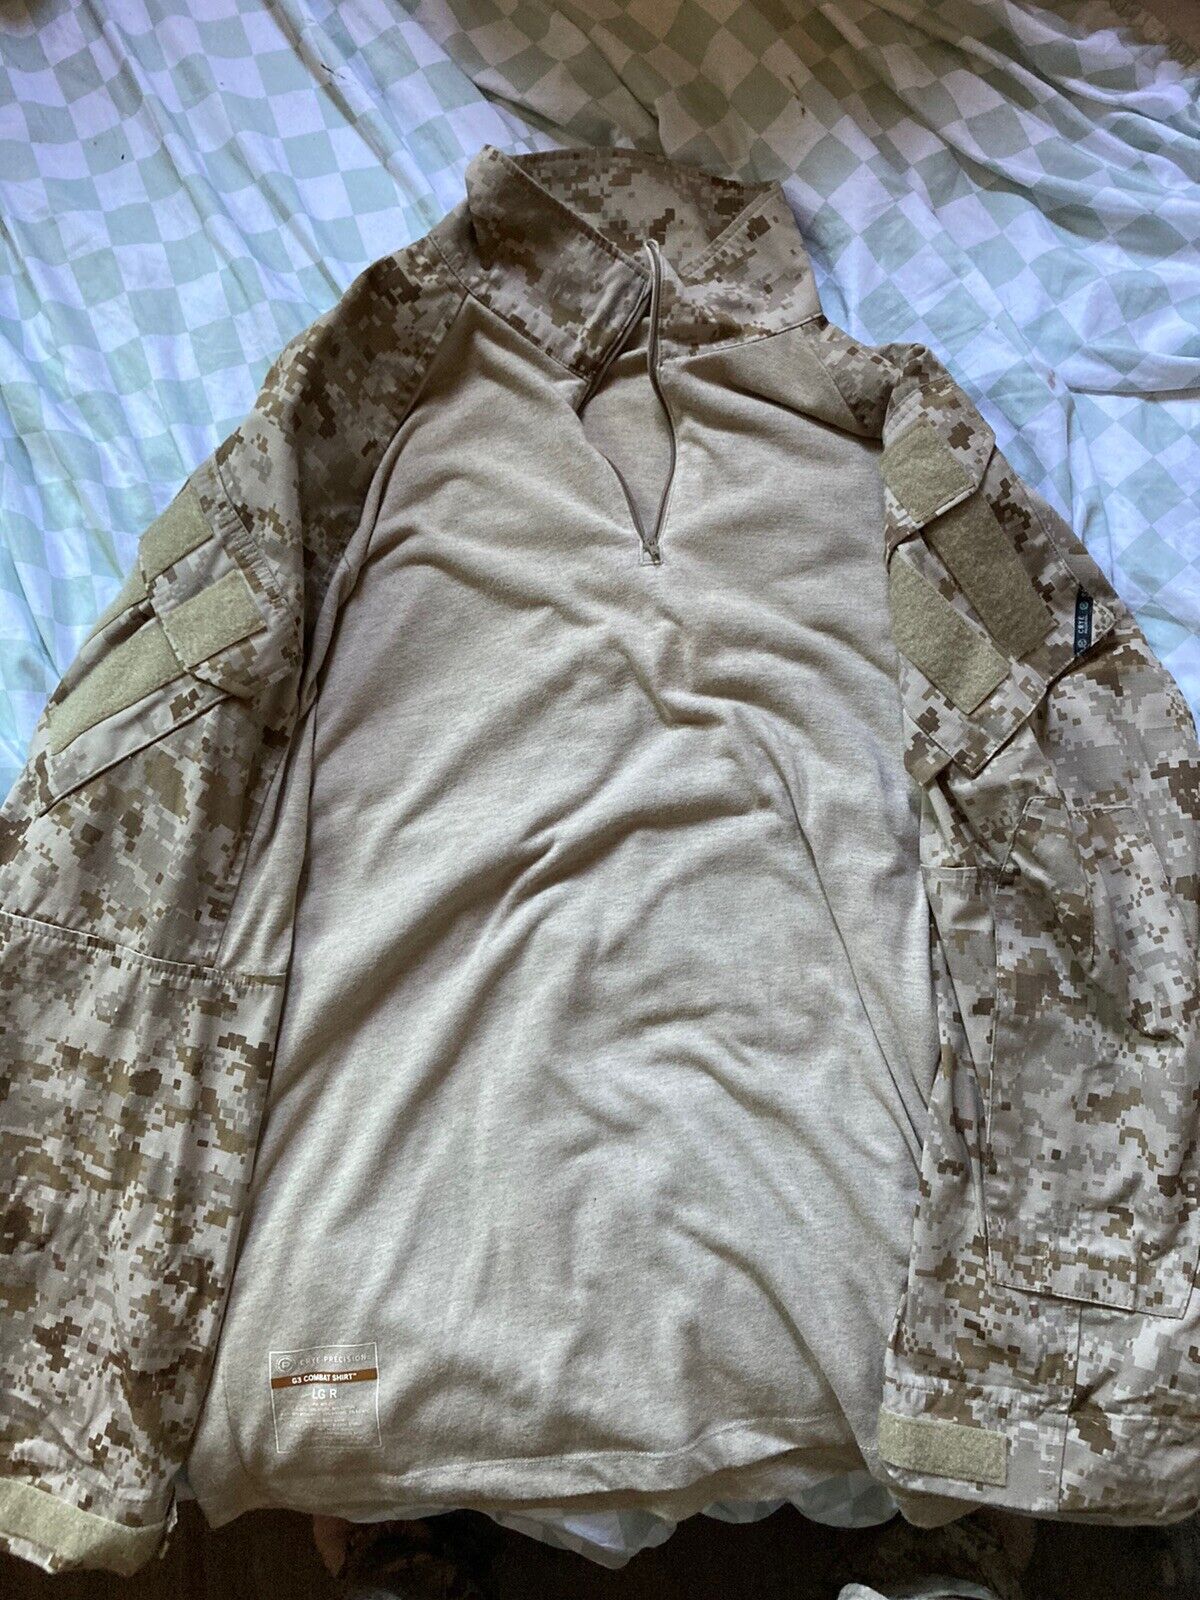 Crye G3 Combat Shirt AOR1 Large Regular